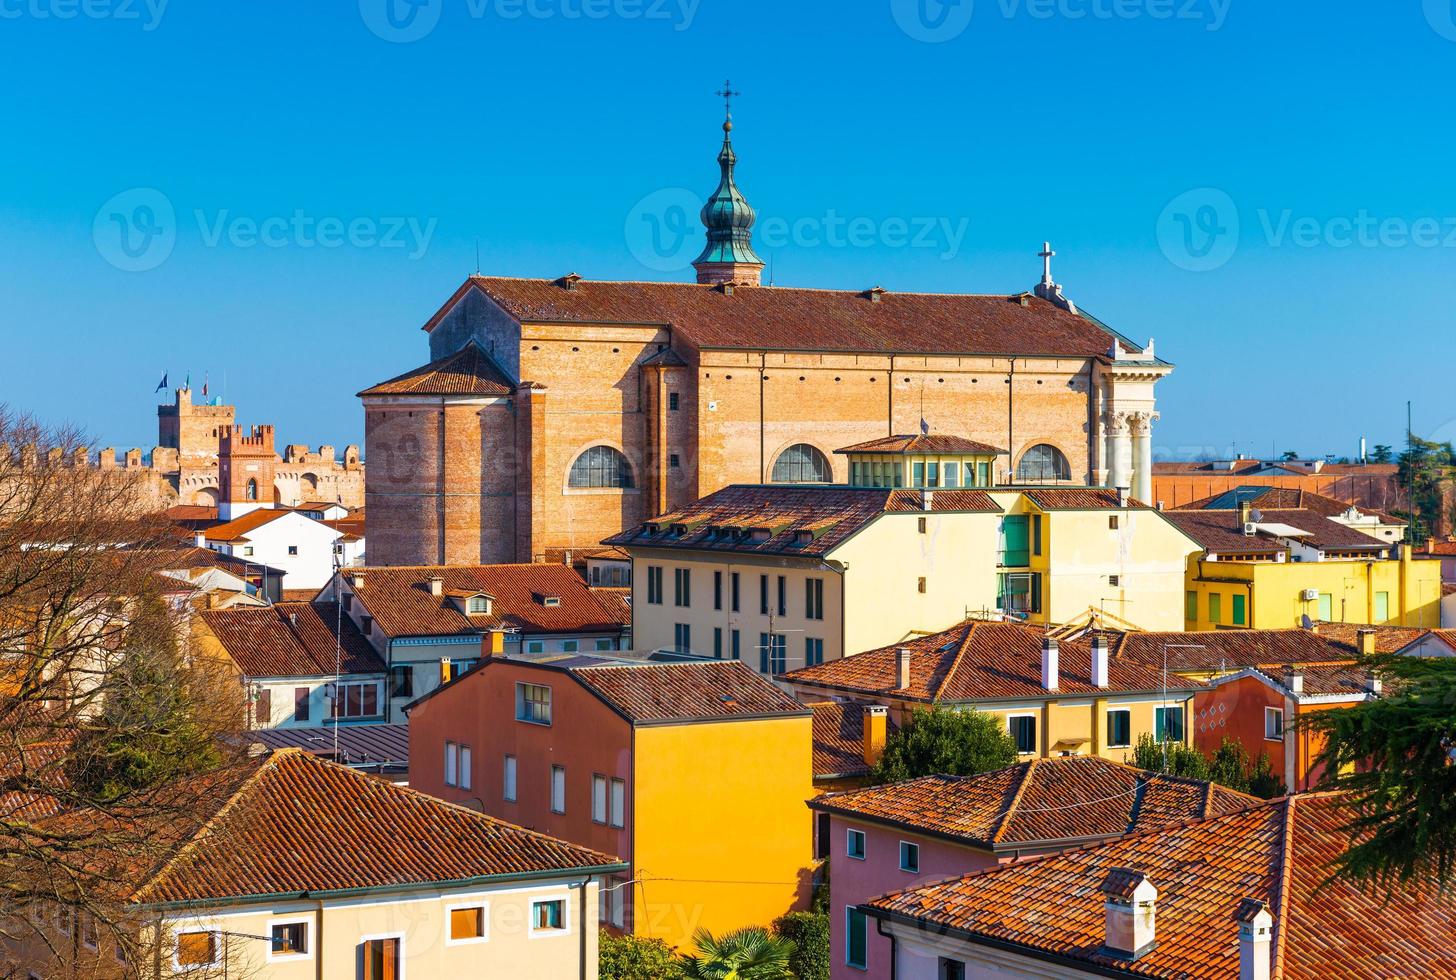 gamla katedralen i centrum av den muromgärdade staden cittadella. panorama av den lilla italienska staden. stadsbilden mot den klarblå himlen, Italien. foto